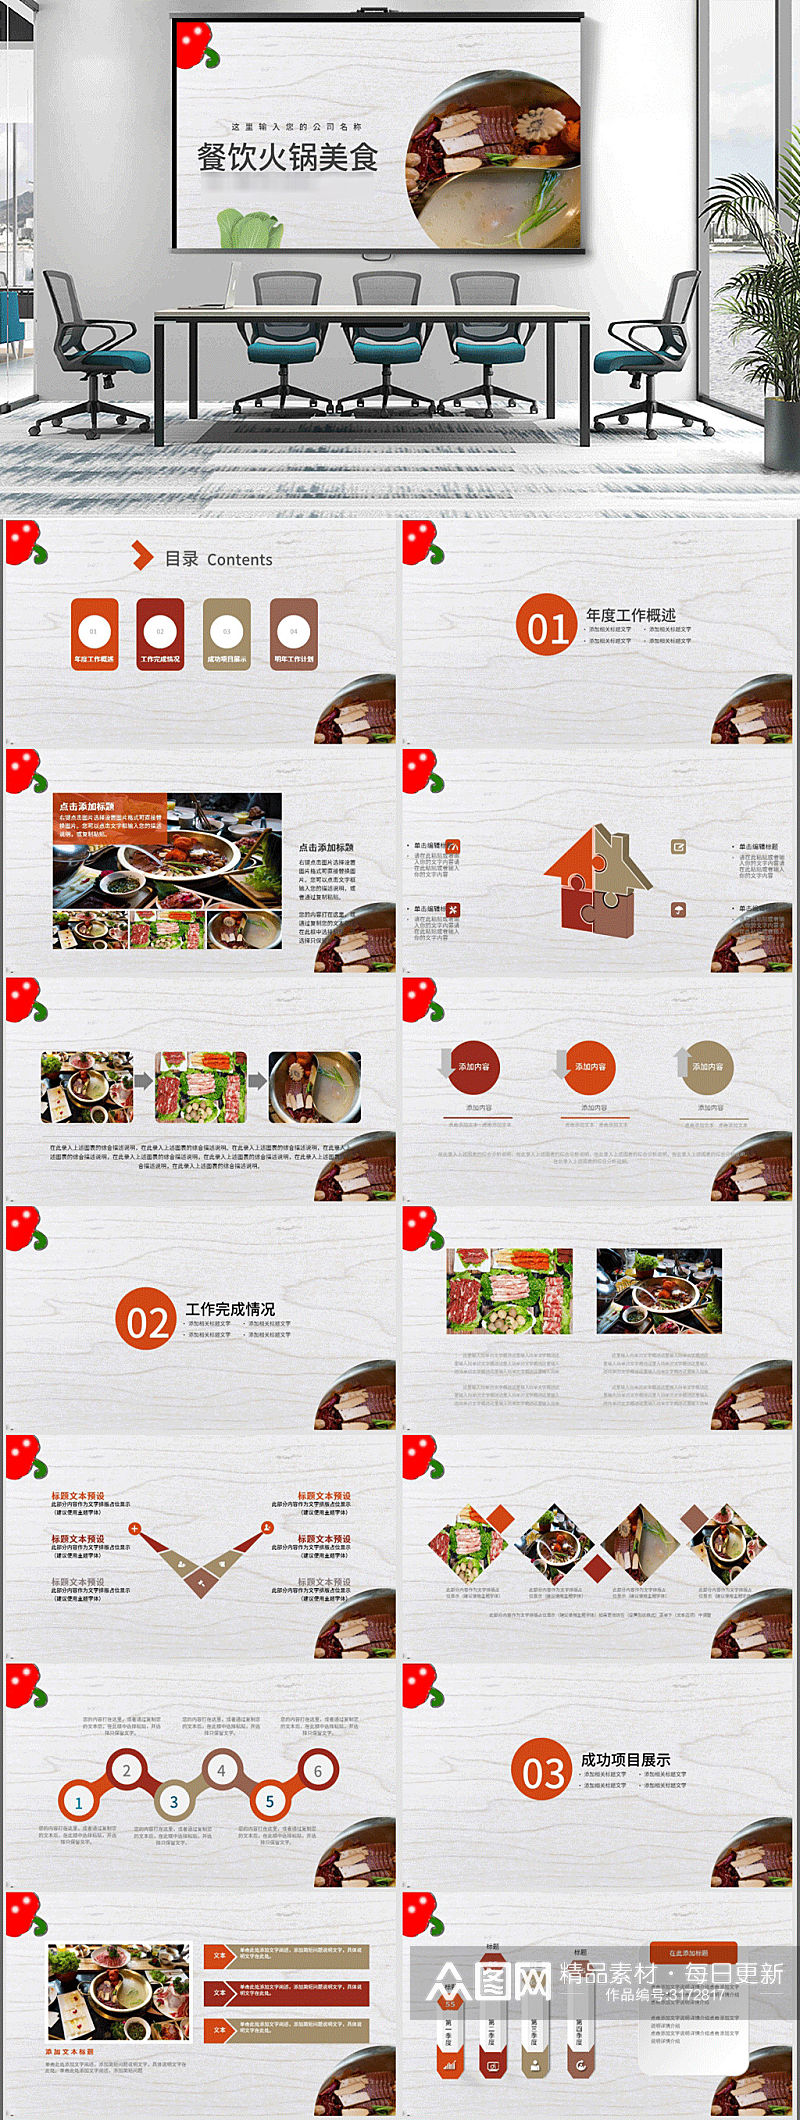 中国传统美食文化火锅饮食餐饮PPT模板素材